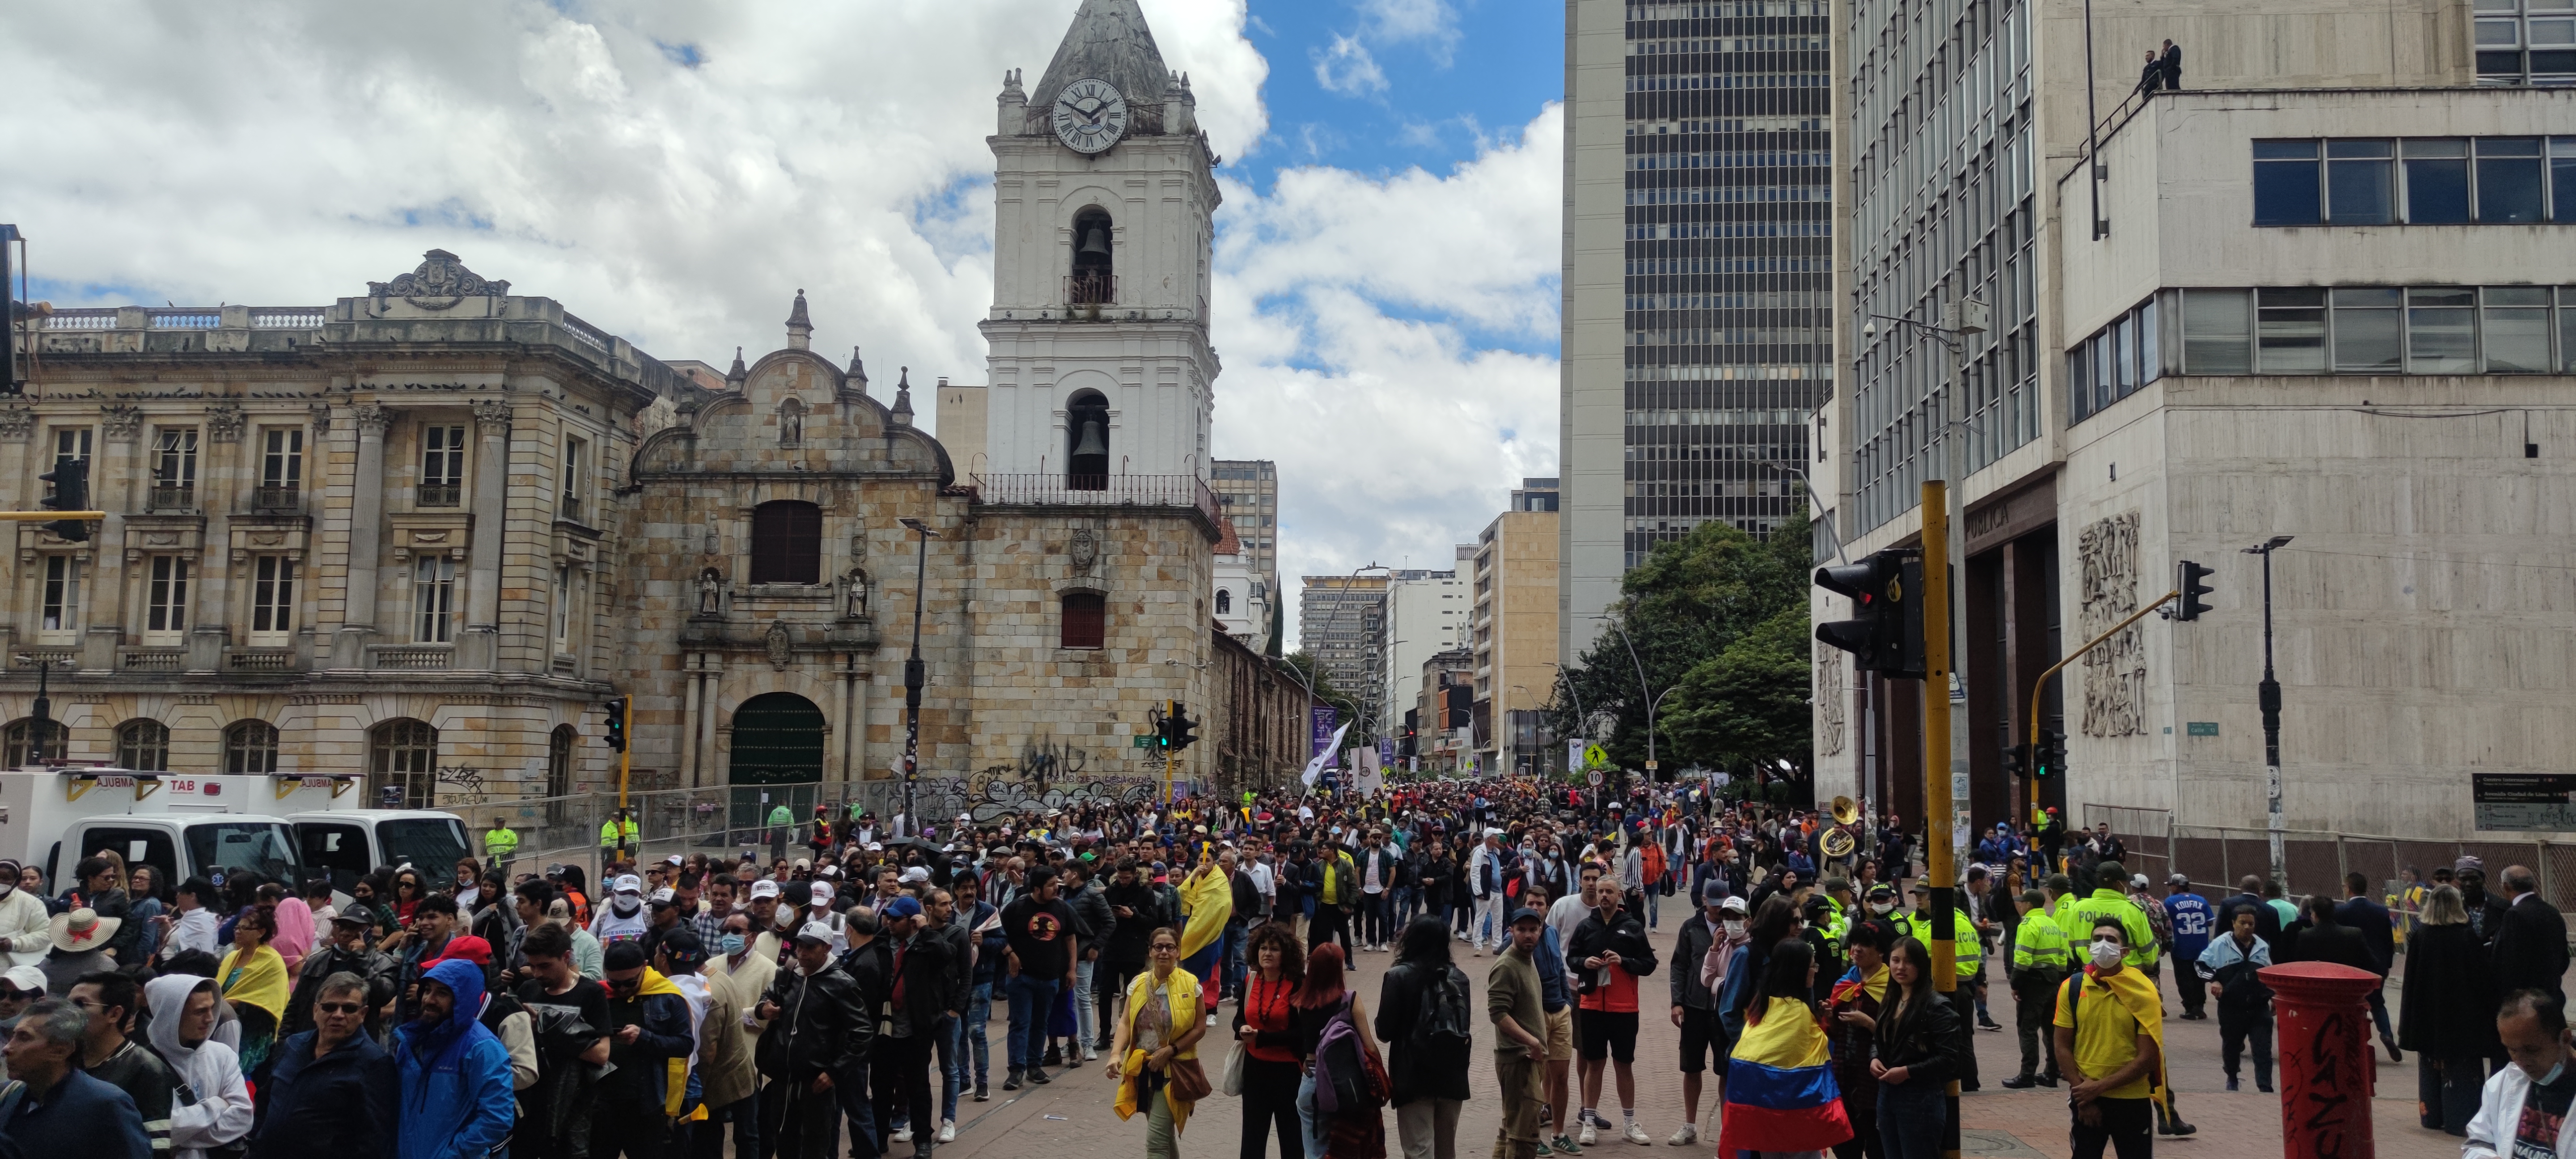 Plazas y calles llenas, así transcurre la jornada del domingo 7 de agosto, de cara a la posesión de Gustavo Petro. (Foto: Juan Felipe Sacristán/Infobae).